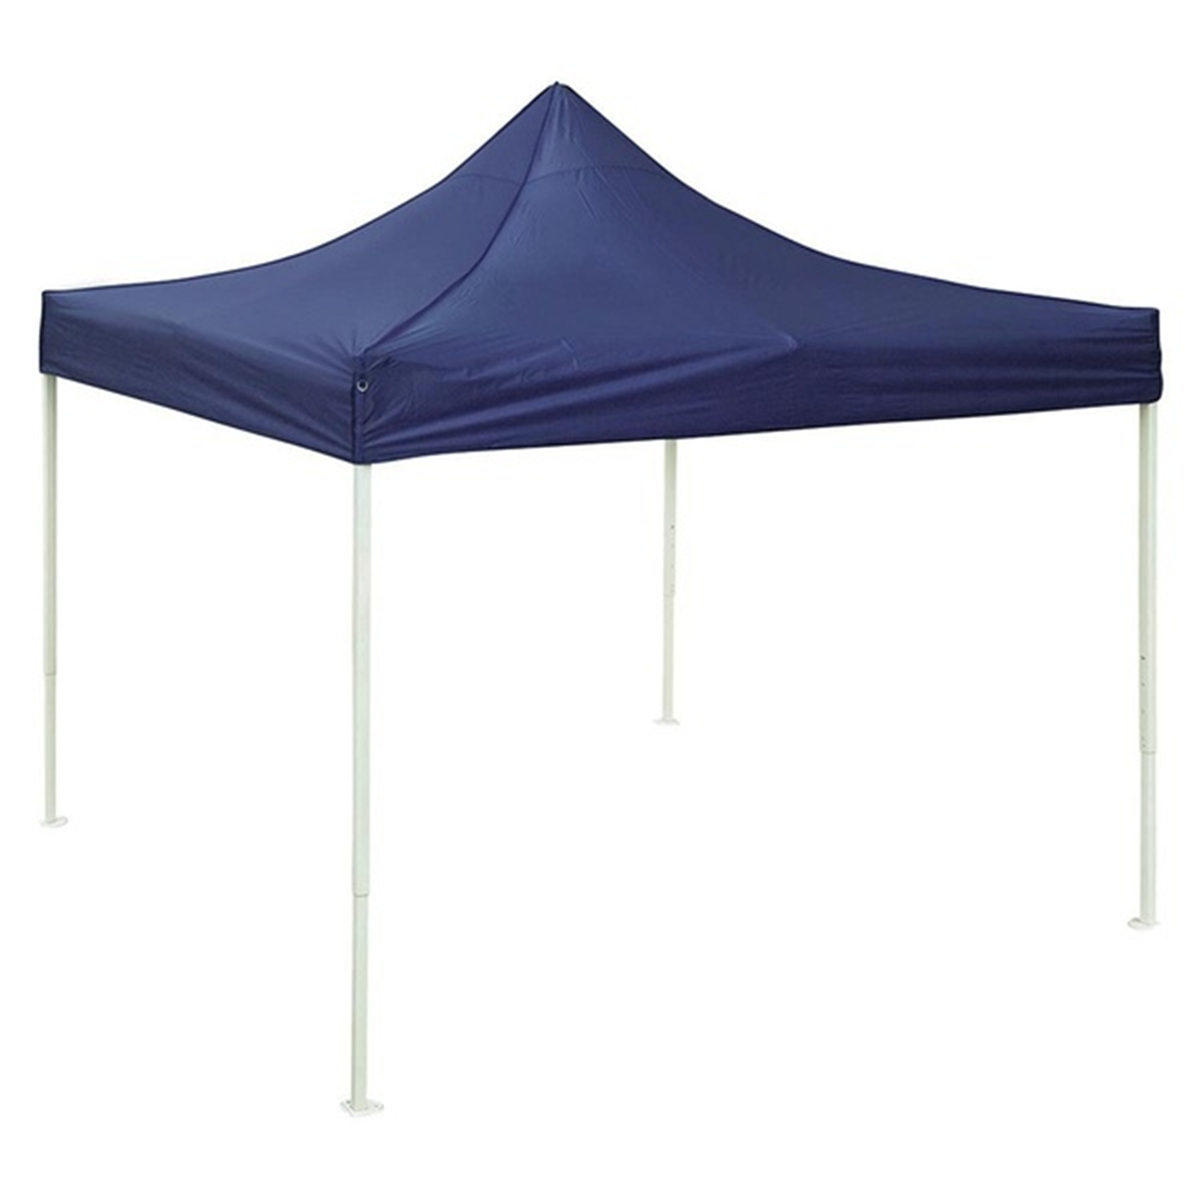 10x10ft 420D impermeabile Oxford tessuto parasole esterno viaggio escursionismo tenda campeggio